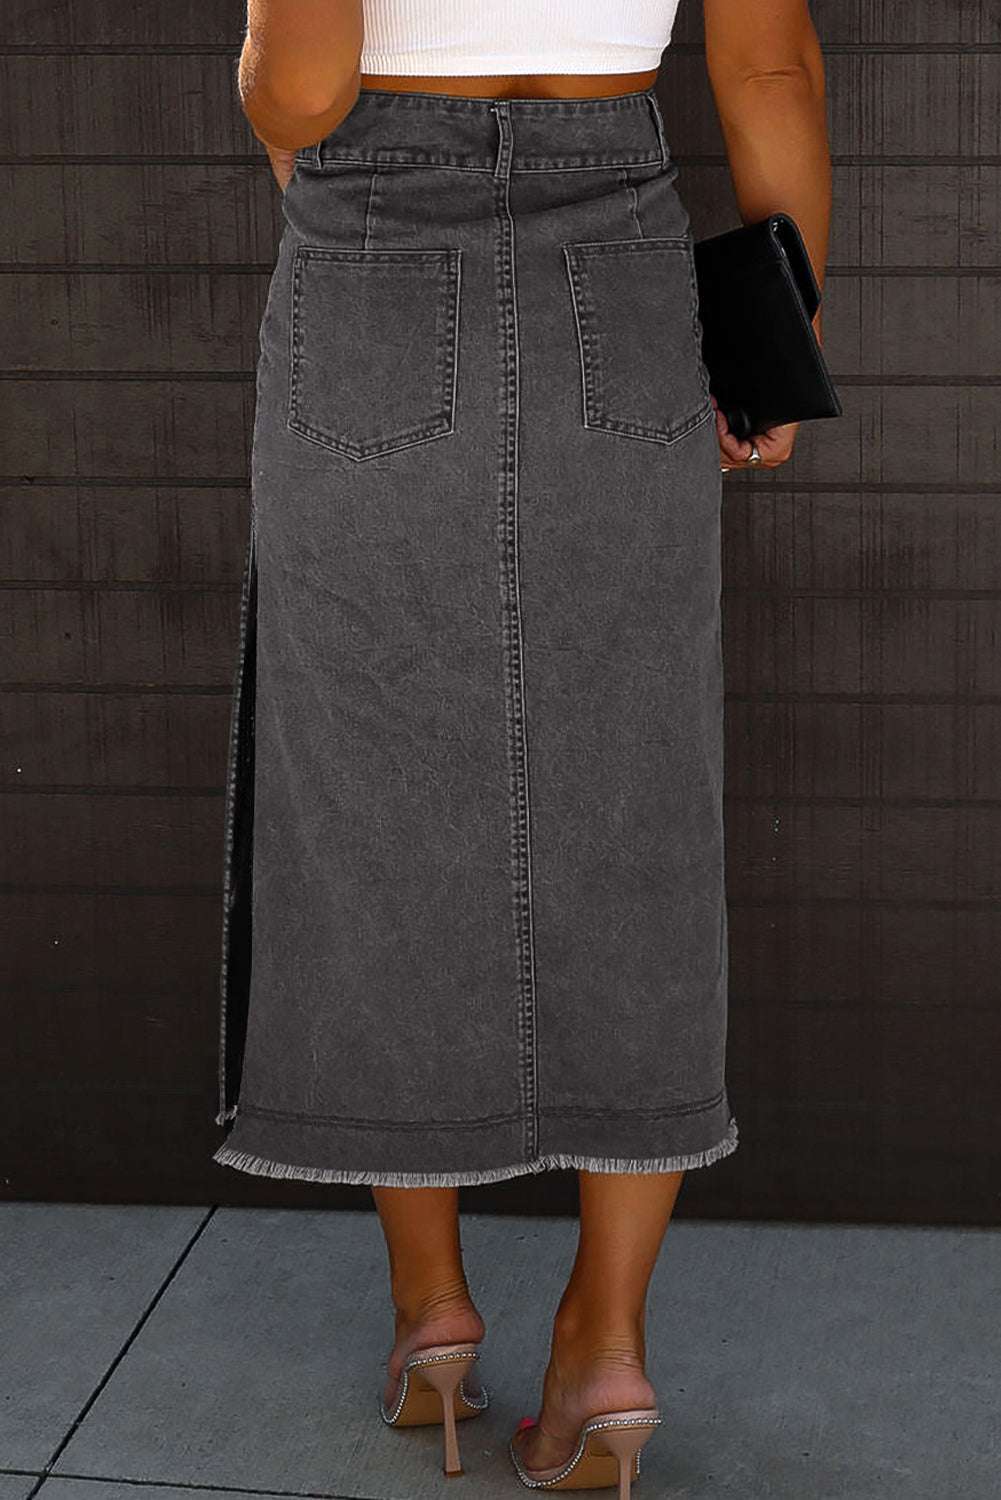 Crna midi traper suknja s neobrađenim rubovima s bočnim prorezima i kopčanjem